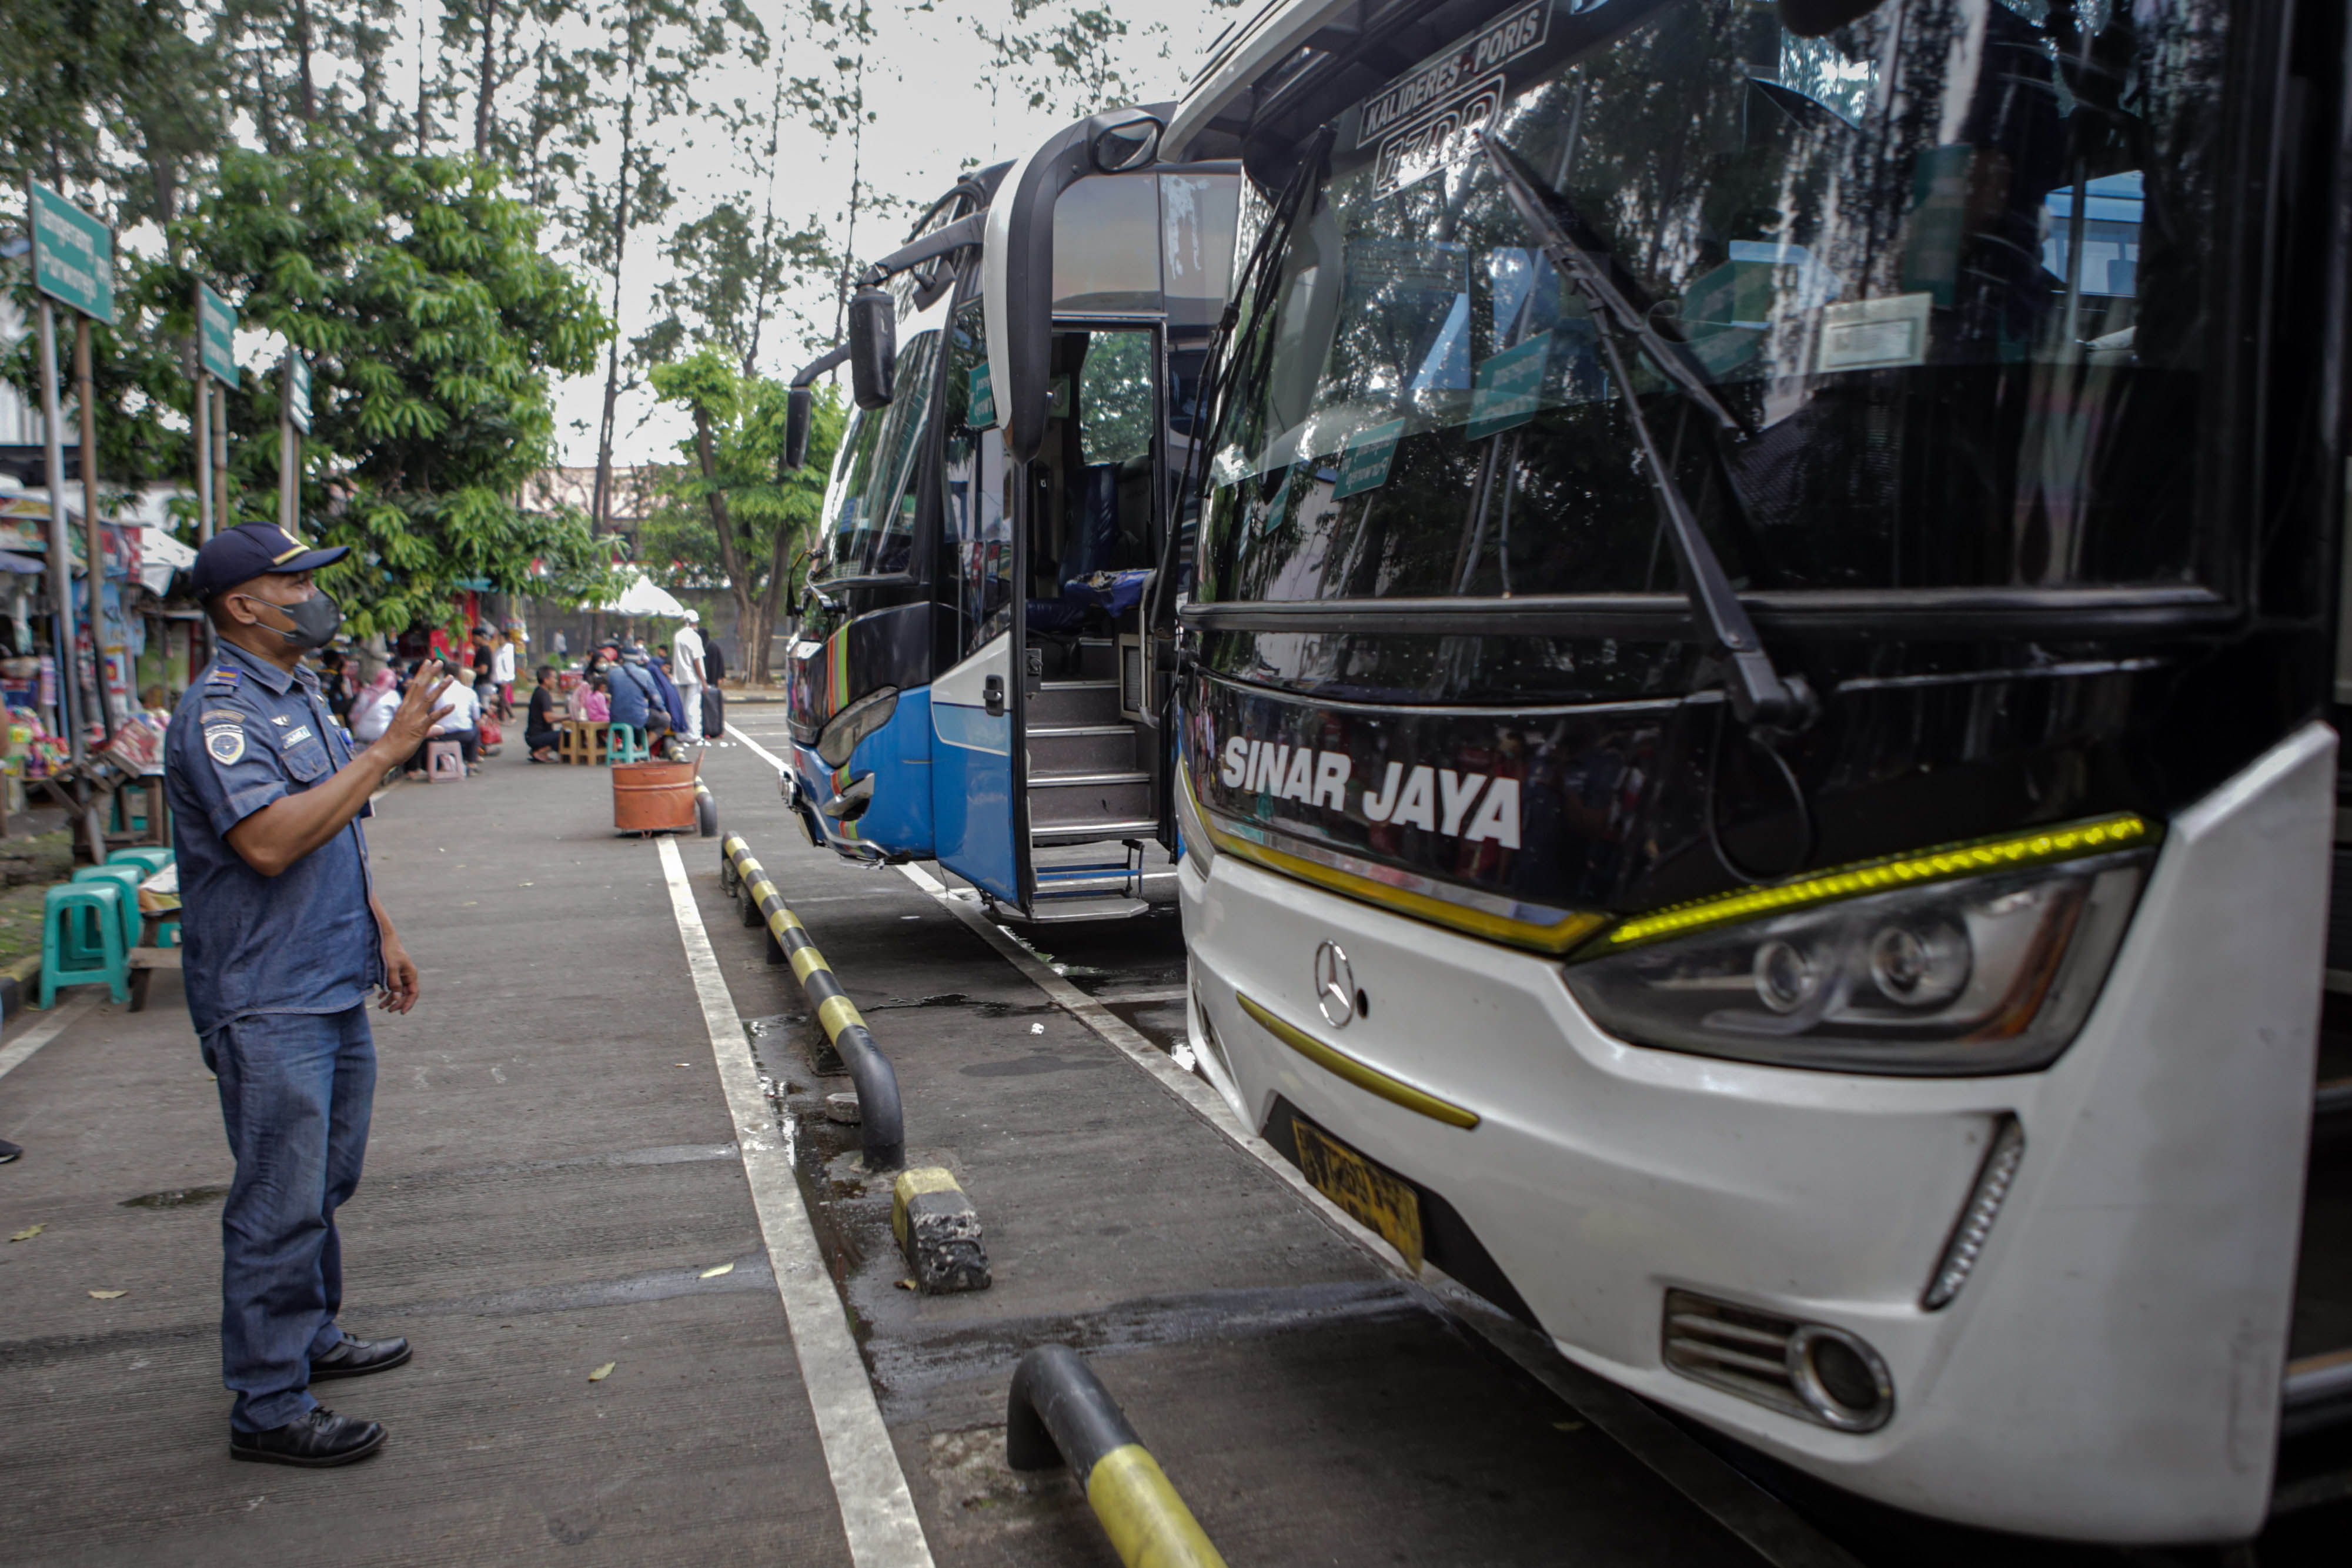 Petugas melihat kondisi angkutan bus saat pemeriksaan kelayakan kendaraan (ramp check) jelang mudik Lebaran di Terminal Poris Plawad, Kota Tangerang, Banten, Senin 18 April 2022. Foto : Panji Asmoro/TrenAsia